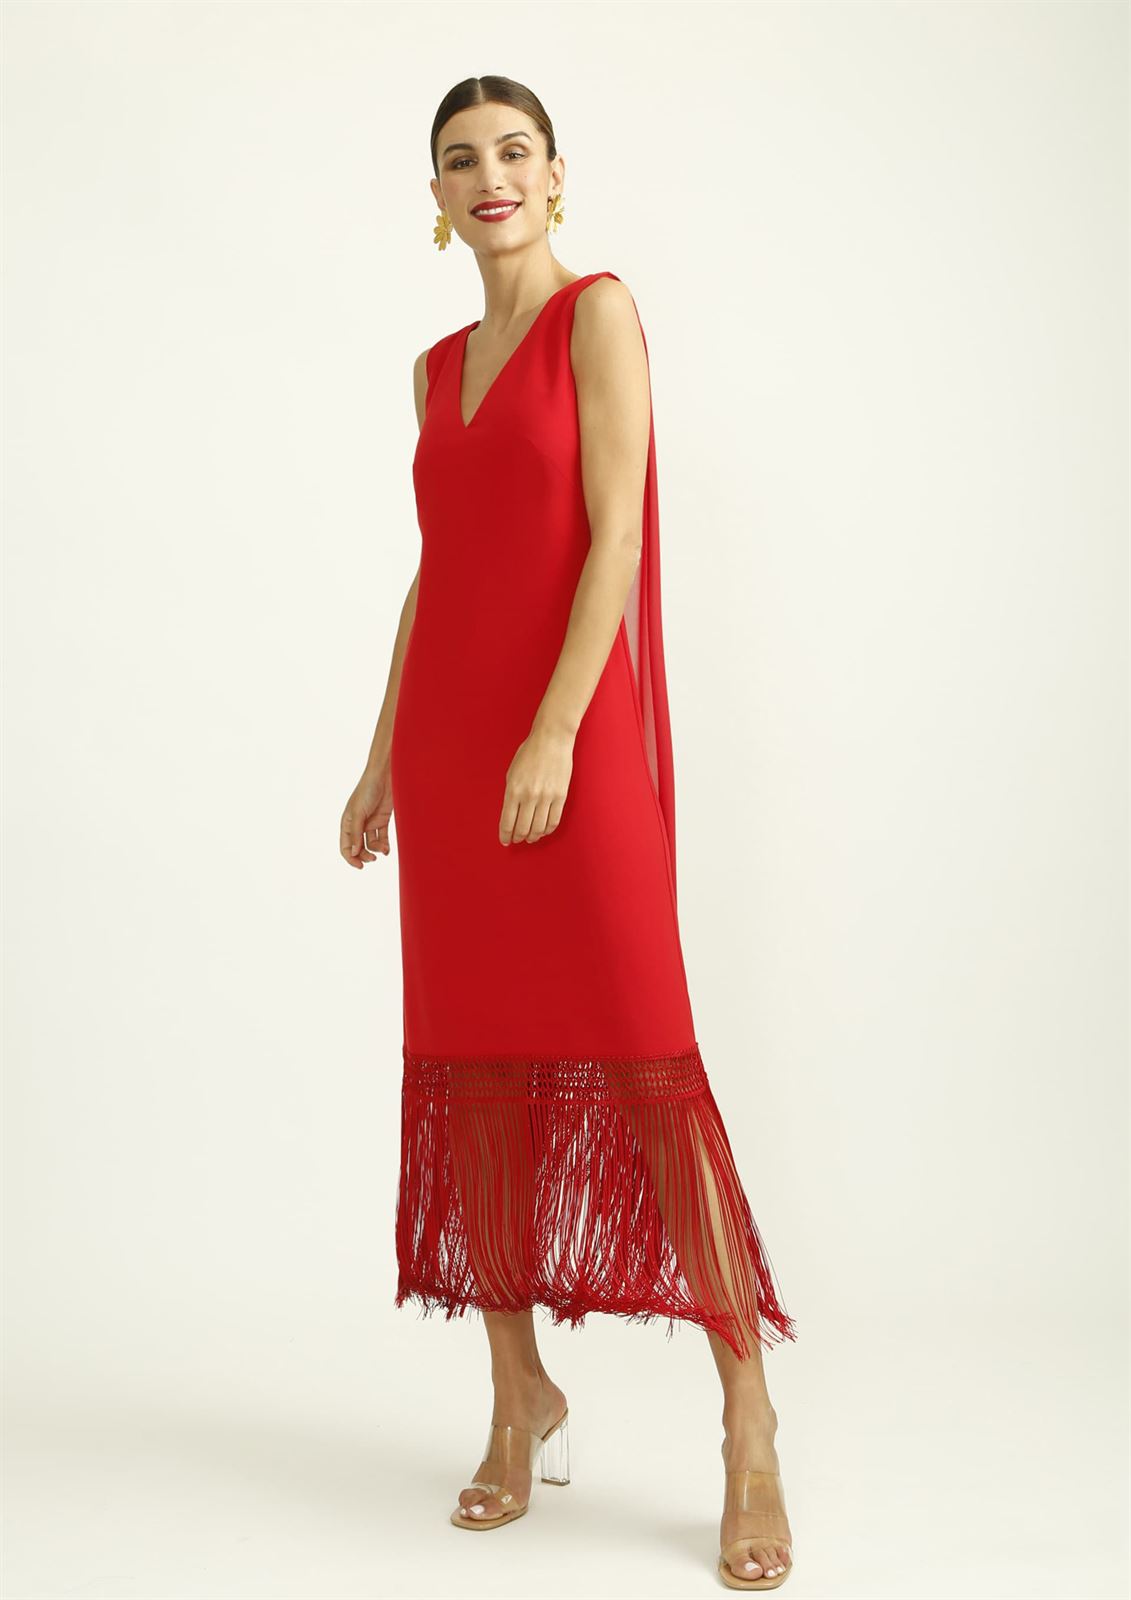 ALBA CONDE Vestido Rojo con Flecos en el Bajo - Imagen 1